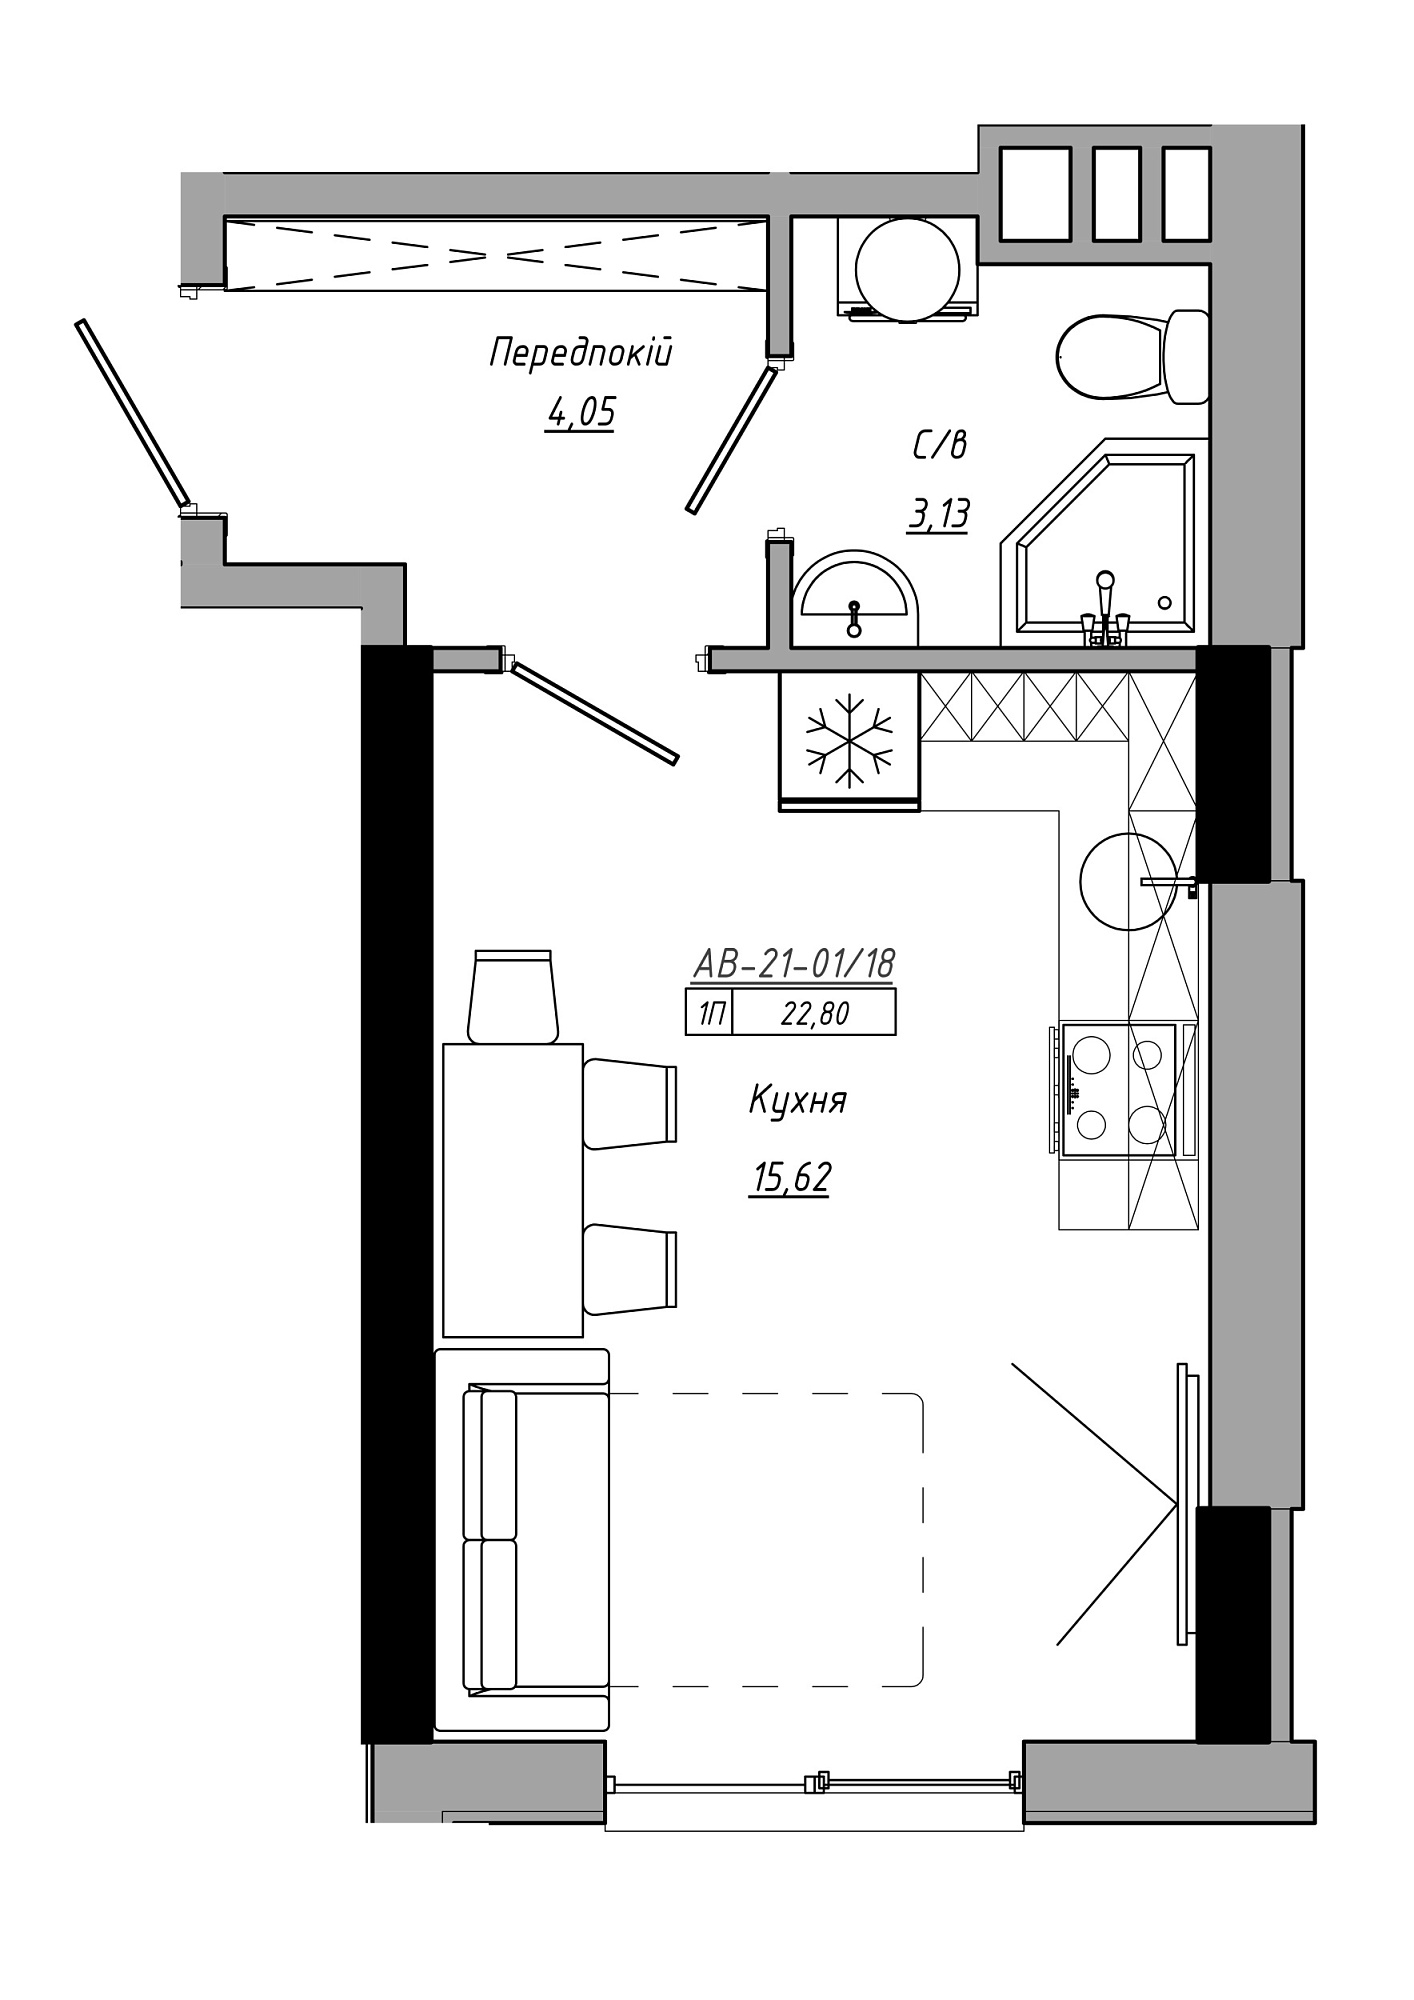 Планування Smart-квартира площею 22.8м2, AB-21-01/00018.